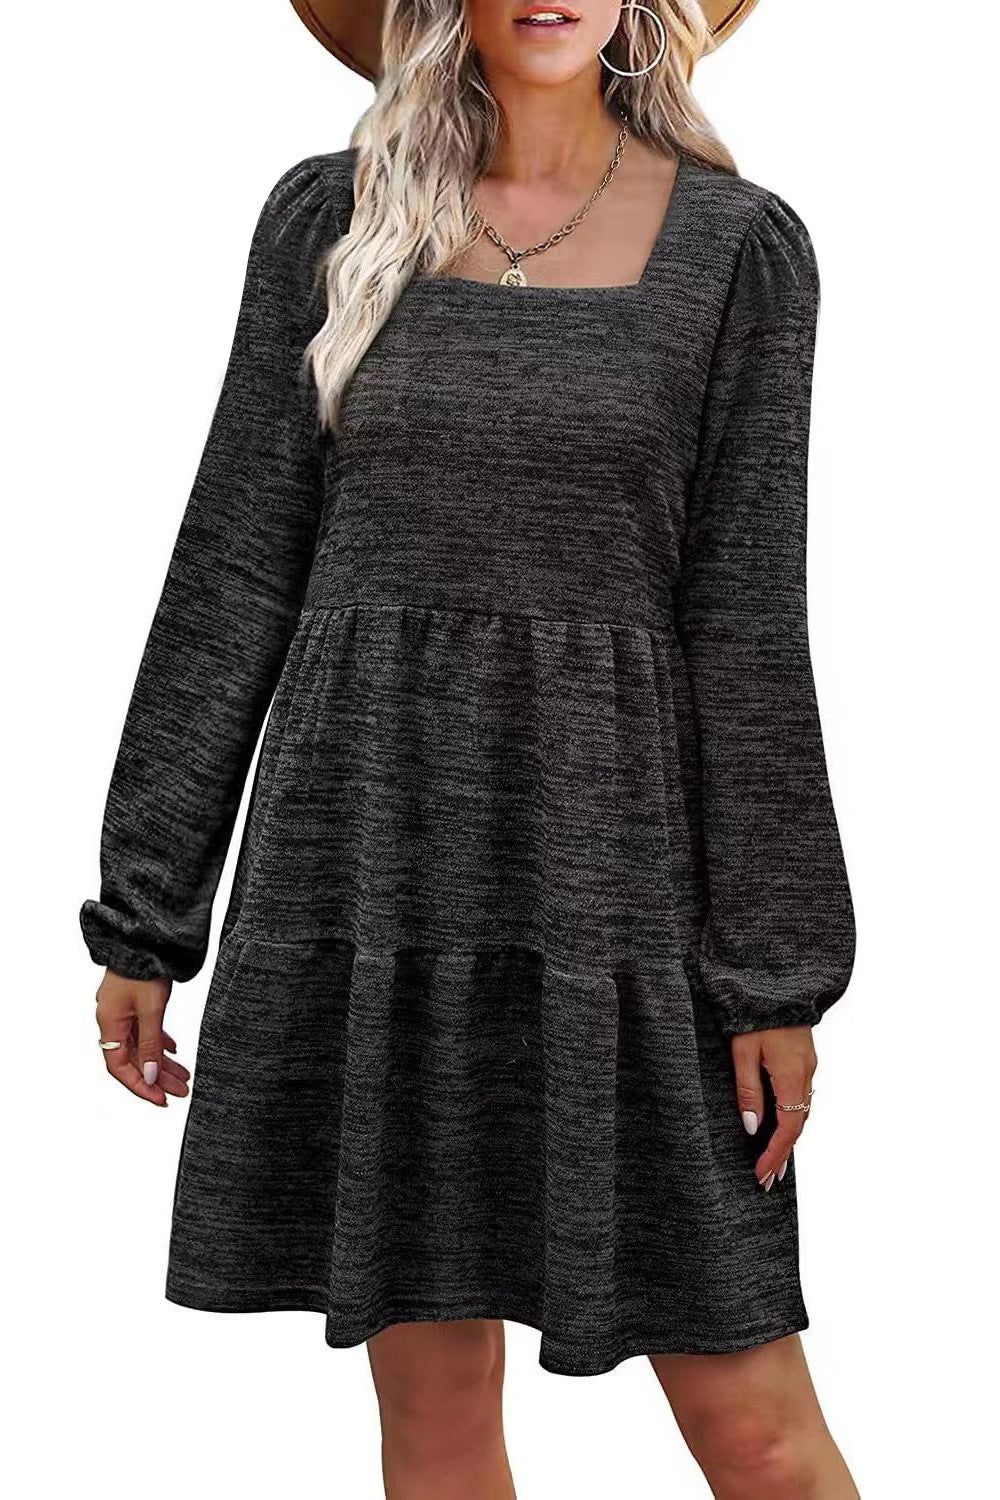 Fashion Square Neckline Fall Mini Dresses-Dresses-Black-S-Free Shipping at meselling99